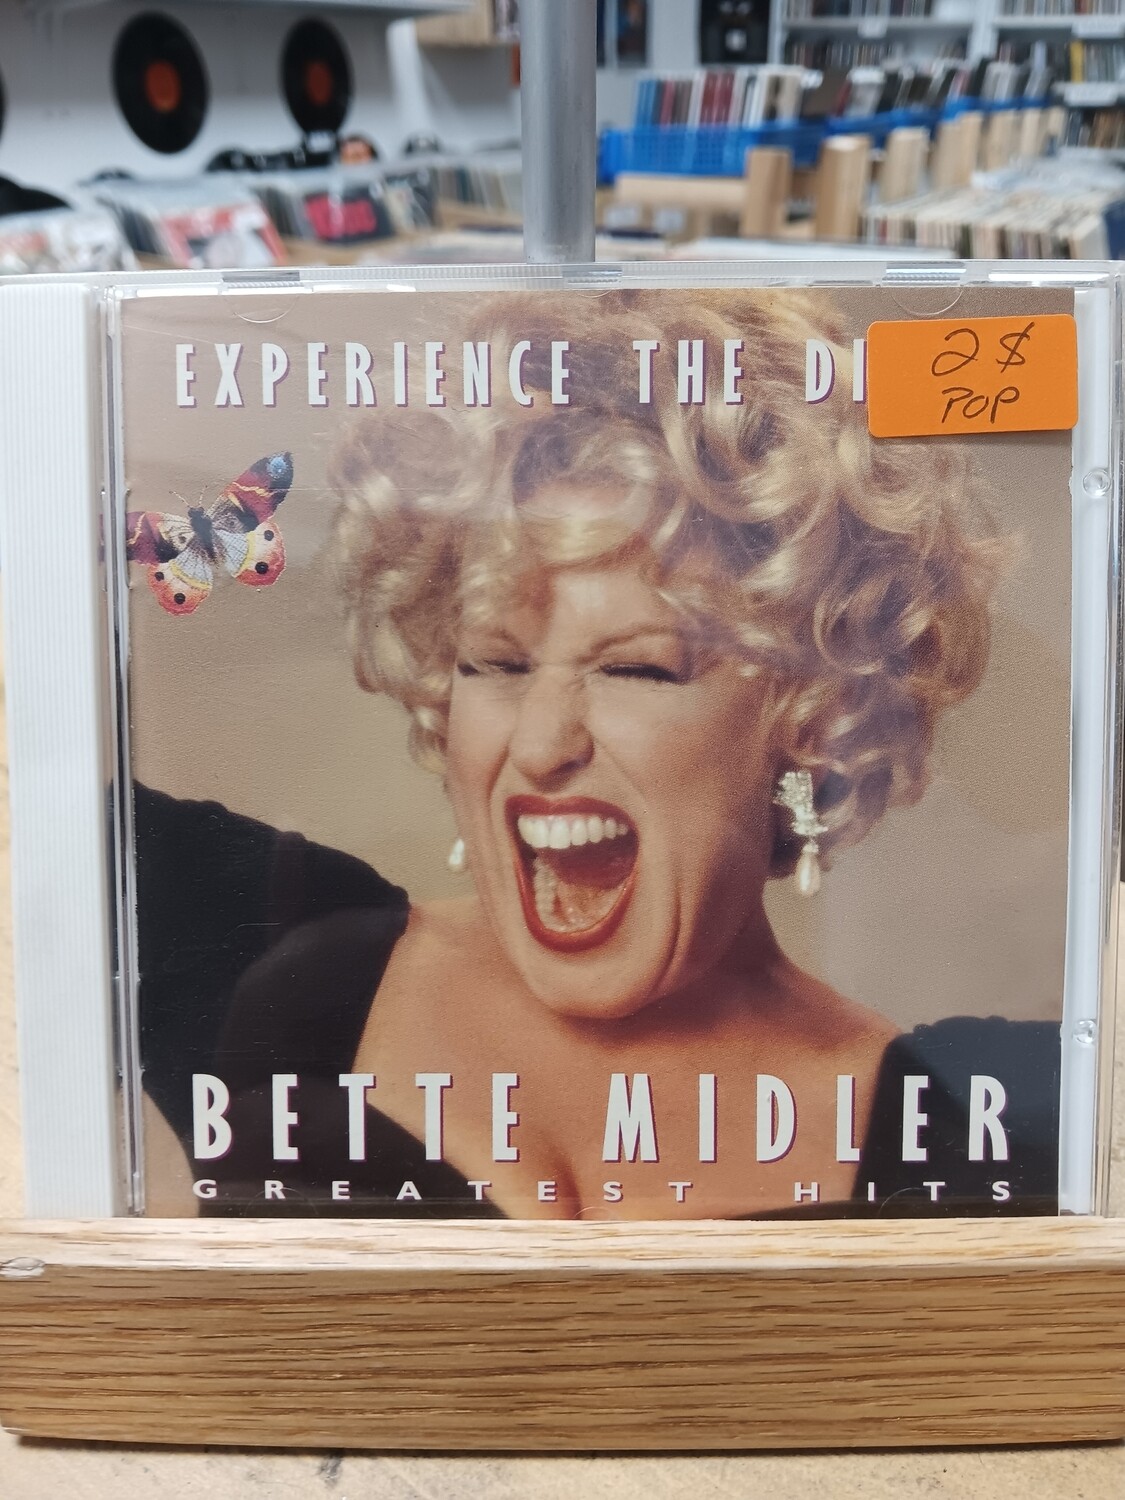 BETTE MIDLER - Greatest Hits (CD)